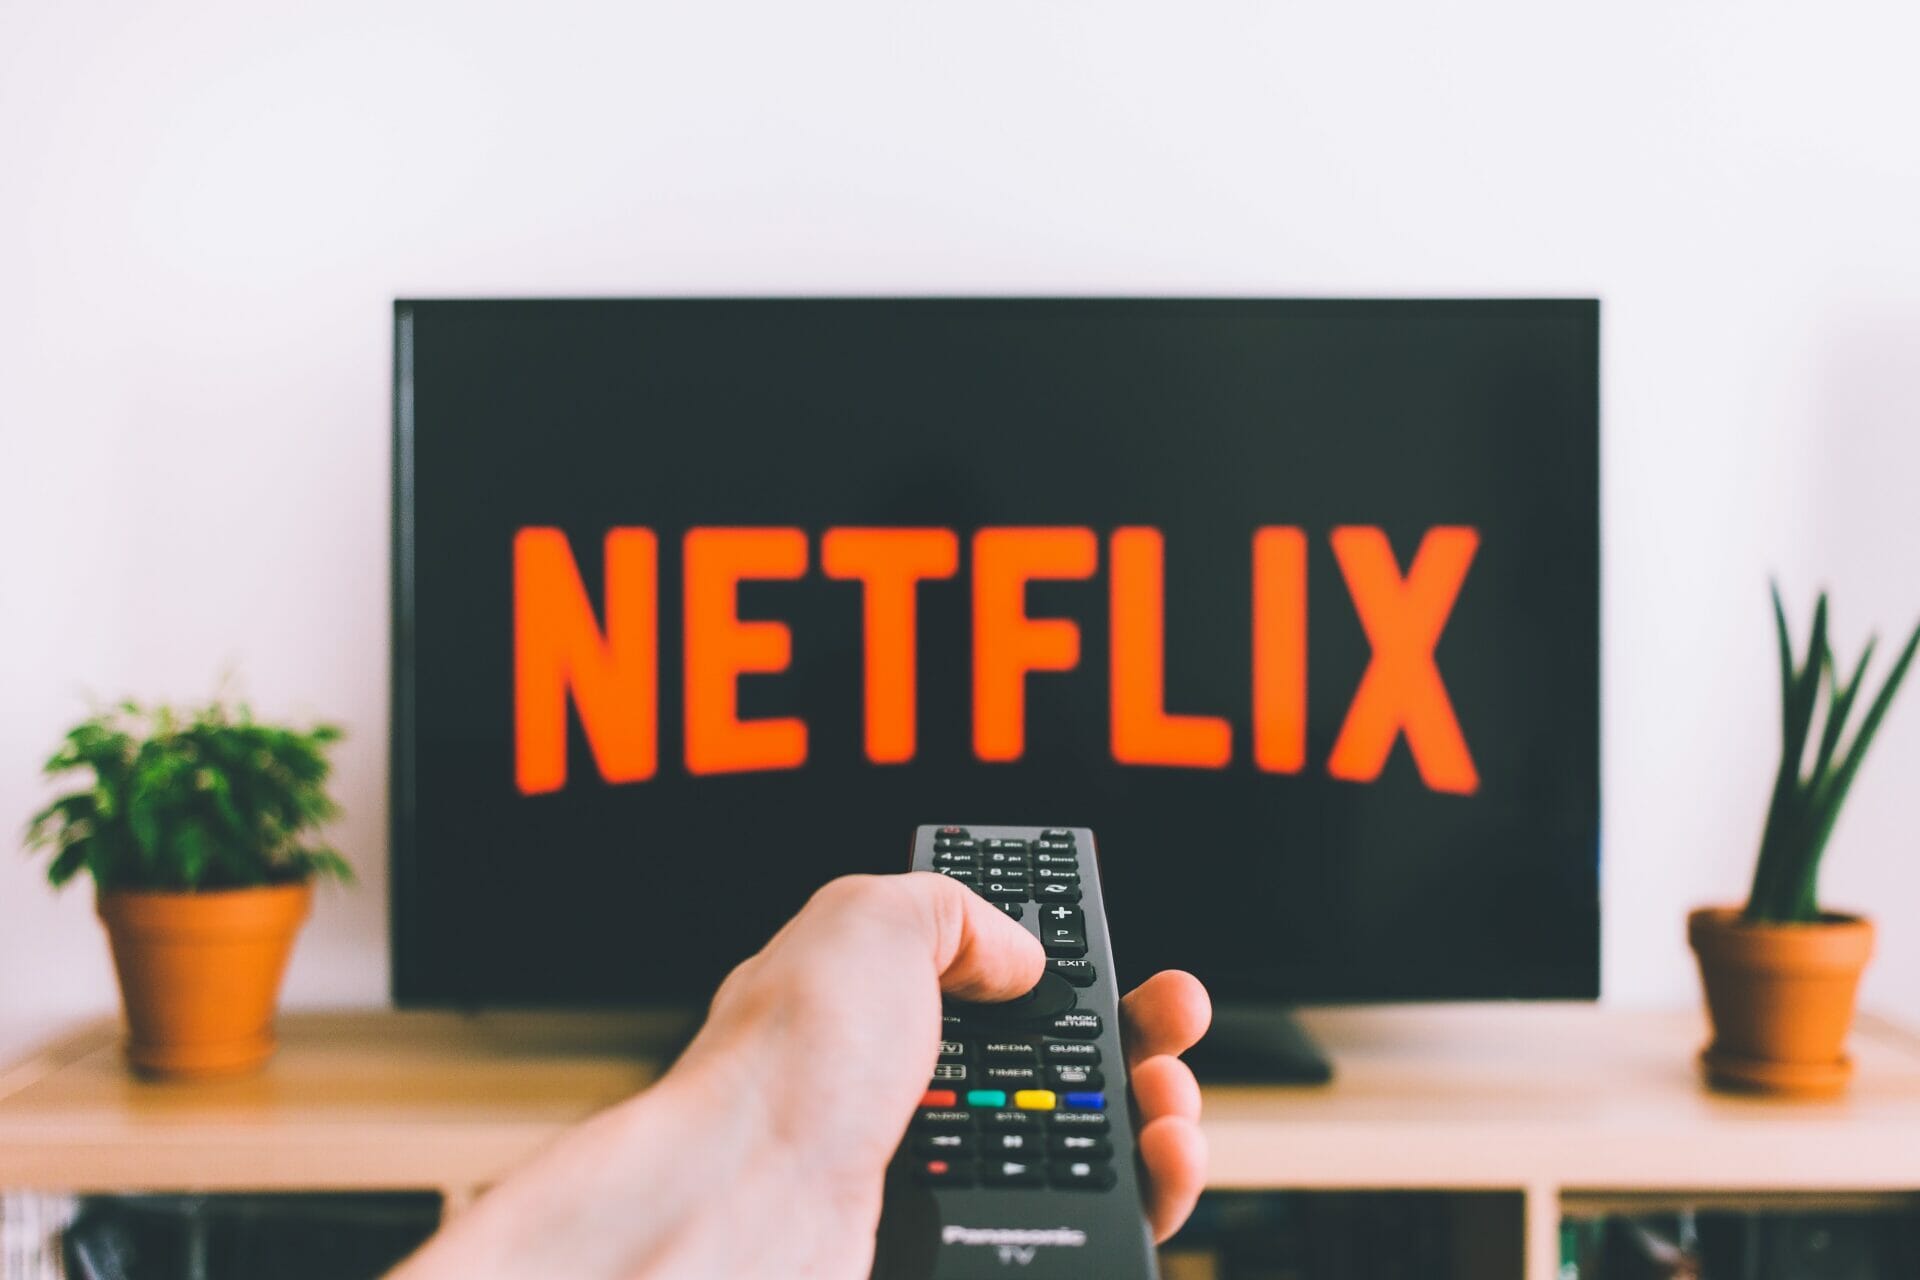 Las suscripciones digitales como Netflix, Spotify o Apple Music pueden suponer un gasto considerable al cabo del mes y del año.